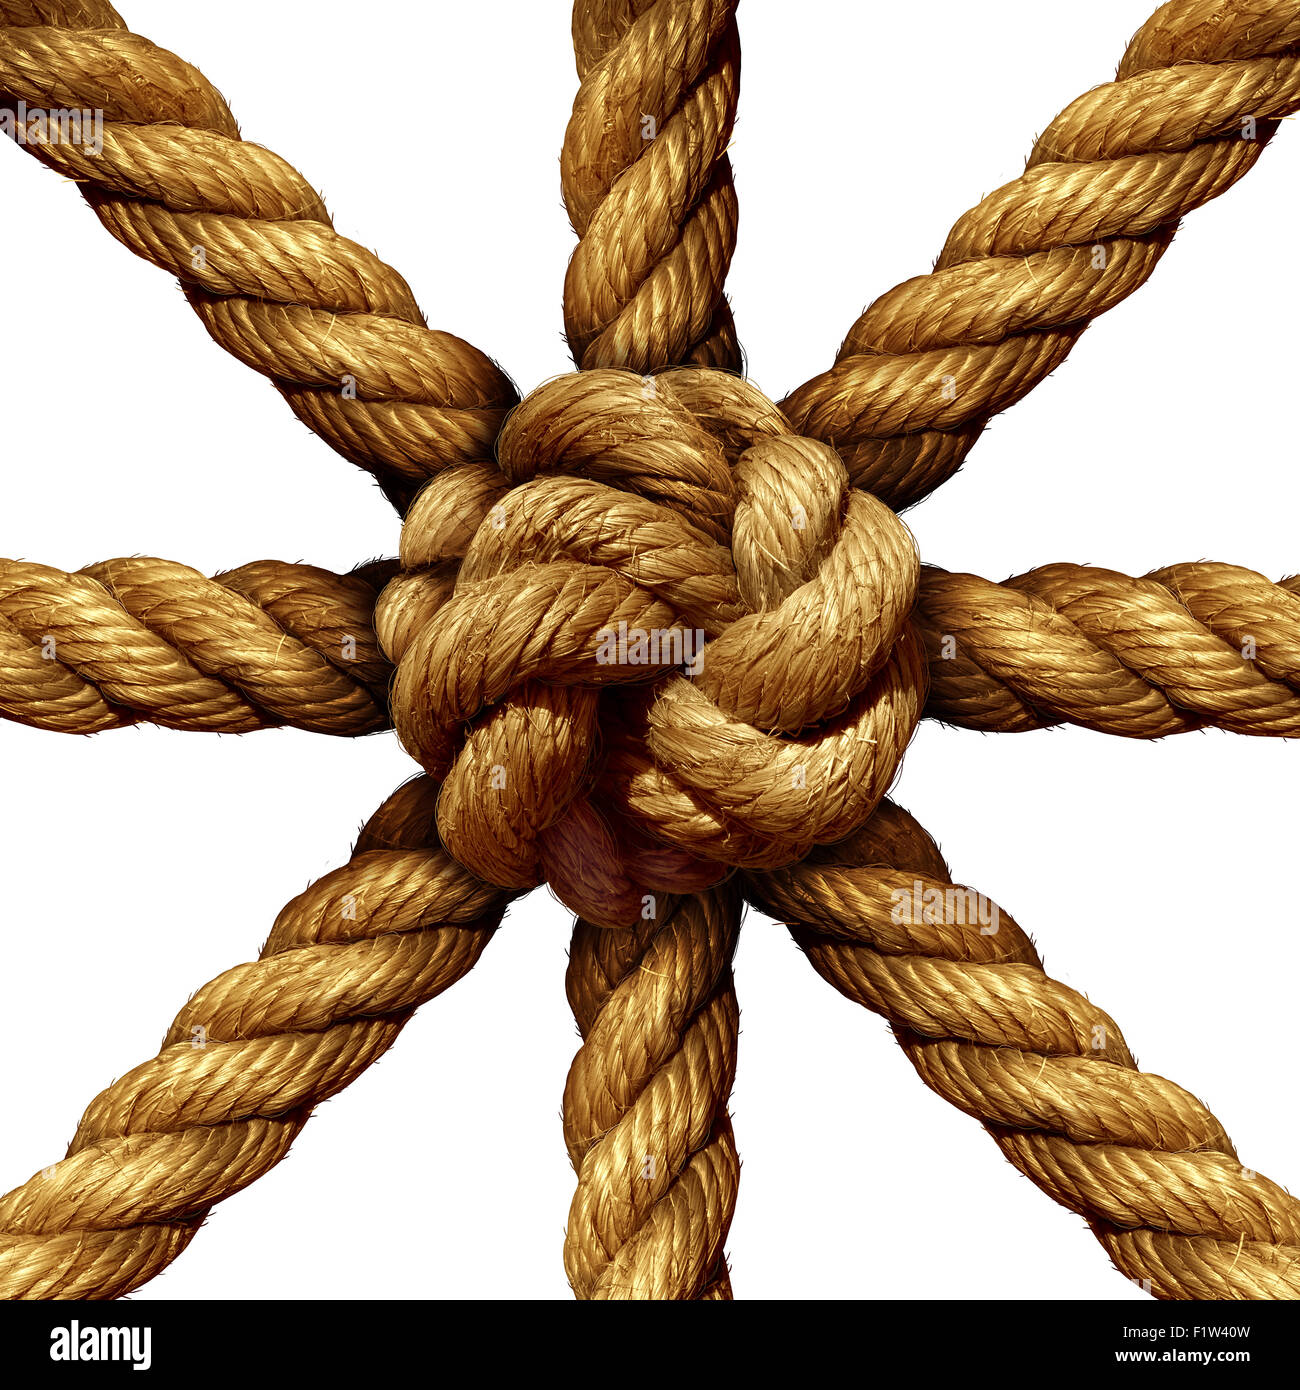 Connected Gruppe Business Konzept und Einheit Symbol als eine Sammlung von dicken Seilen kommen zusammen in einen Knoten in der Mitte als Symbol für die Netzstärke gebunden und Einheit Unterstützung isoliert auf einem weißen Hintergrund. Stockfoto